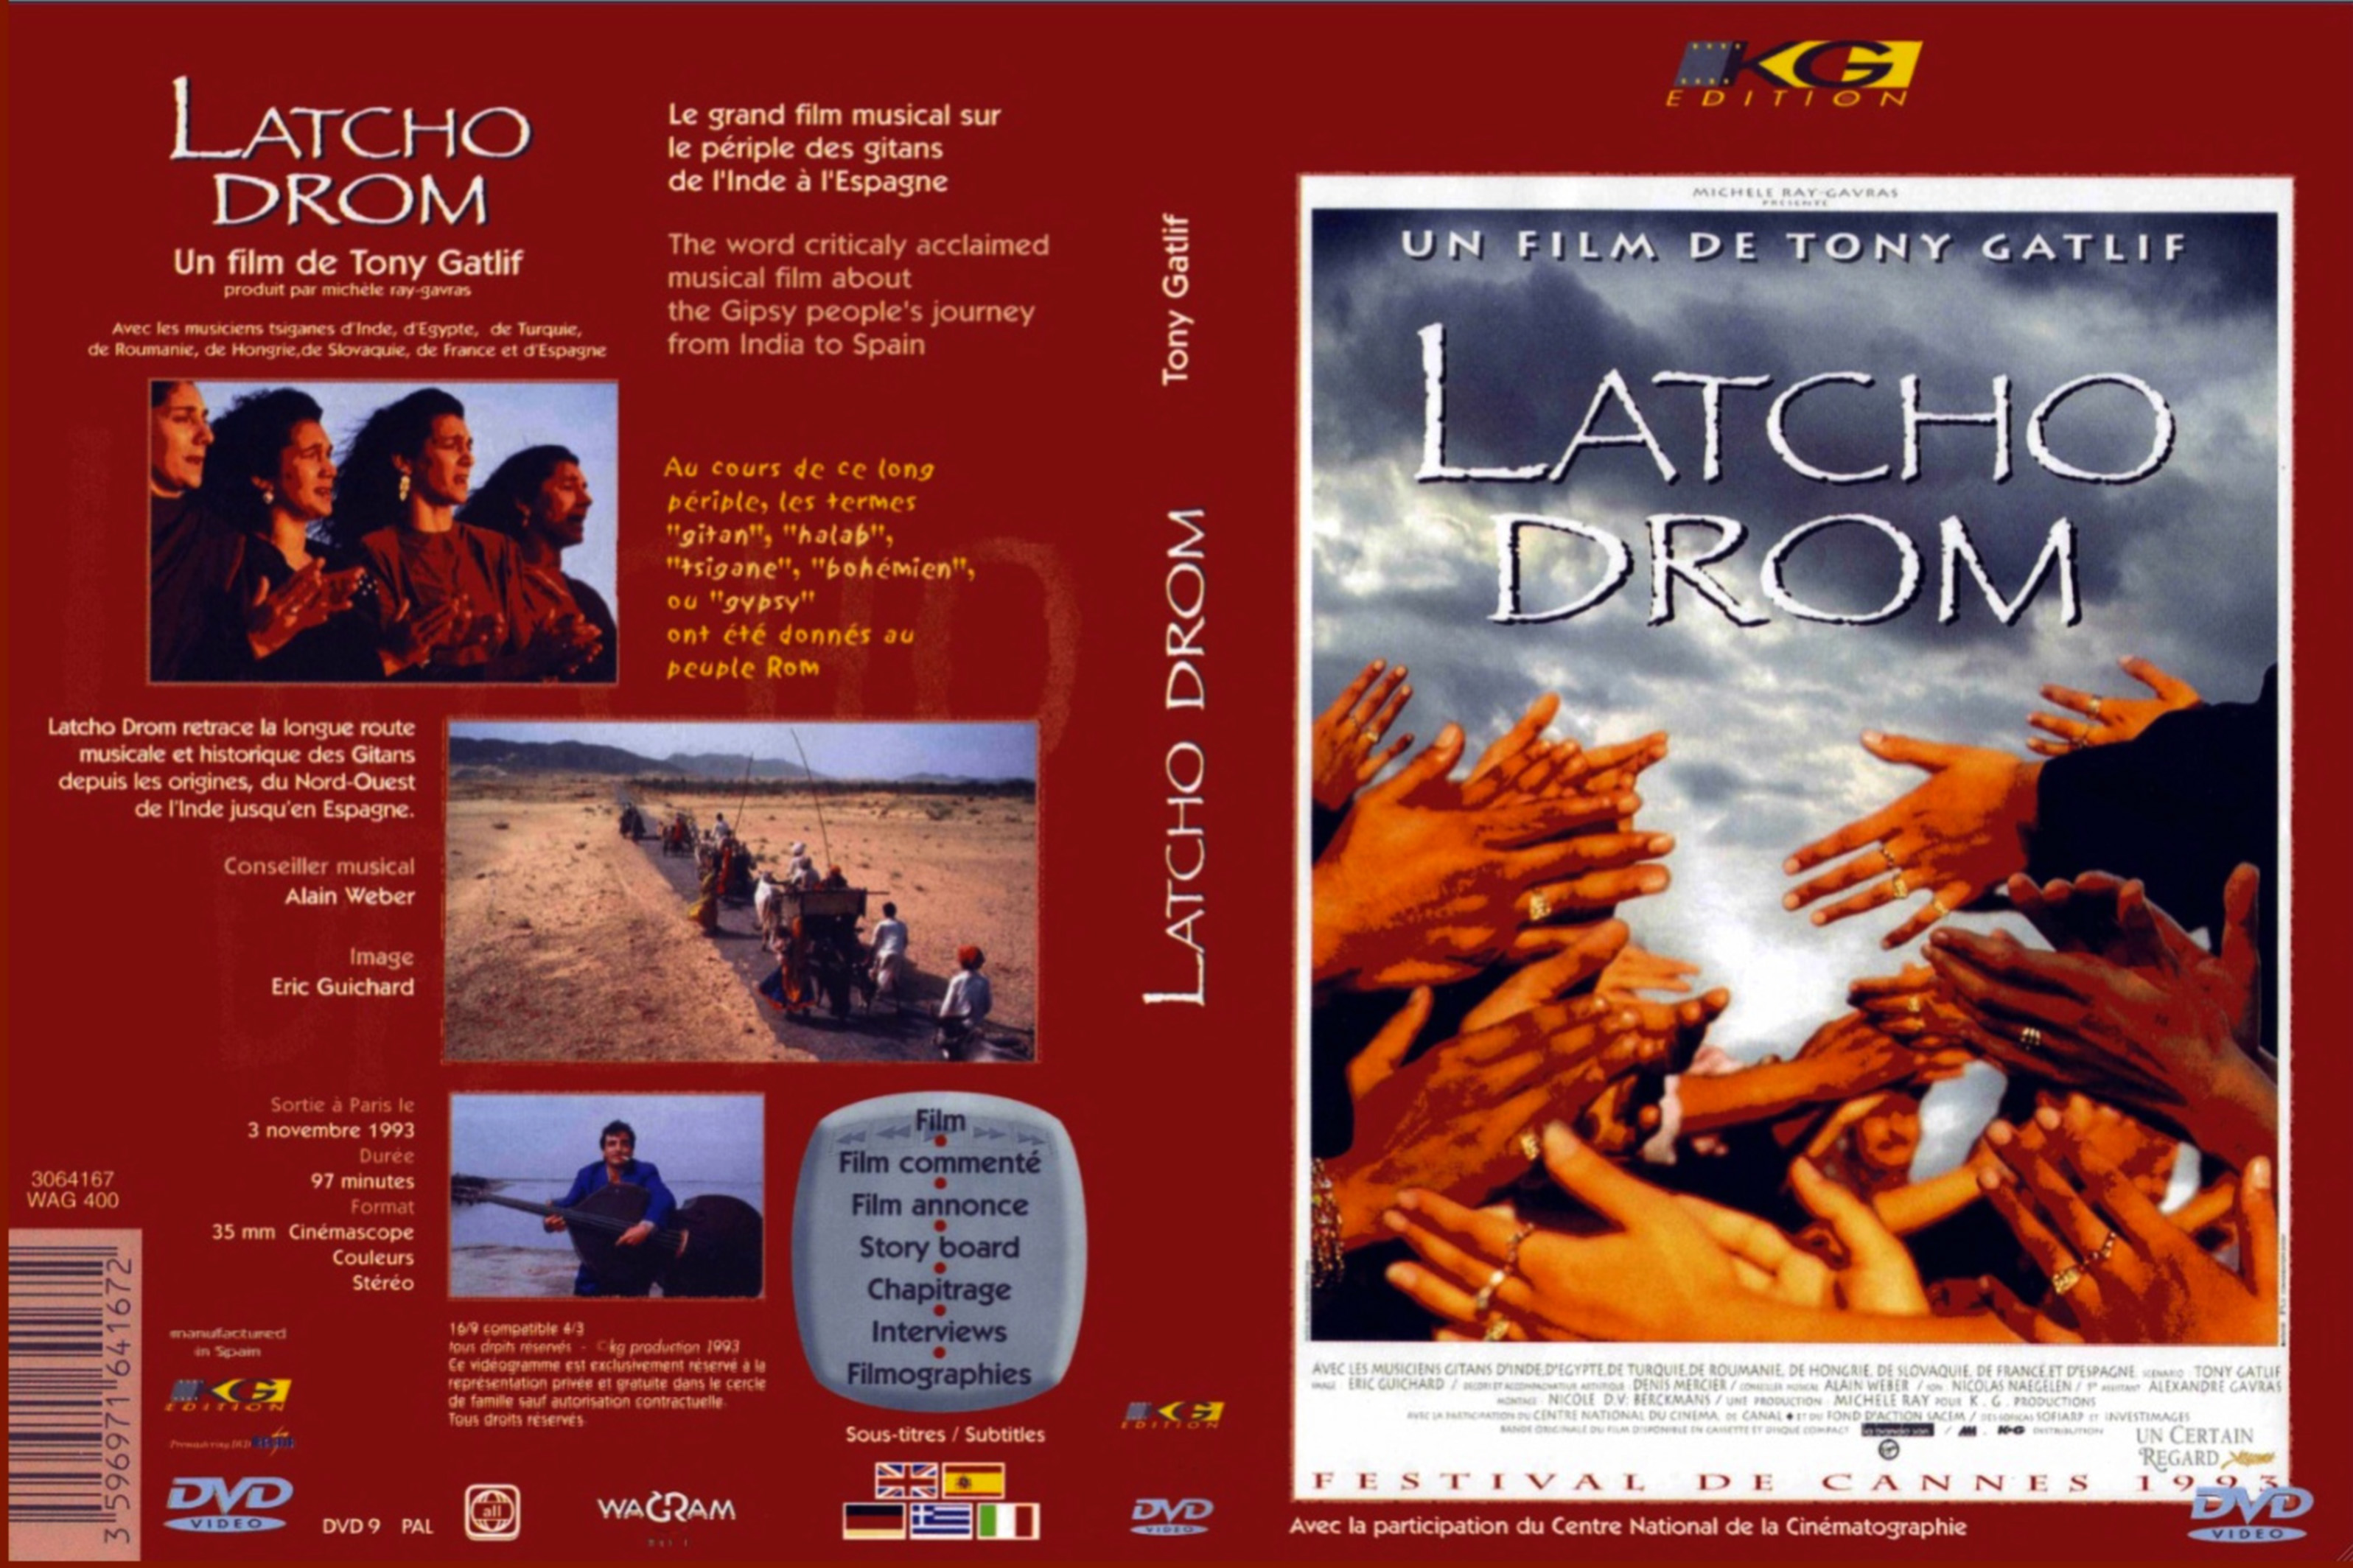 Jaquette DVD Latcho Drom